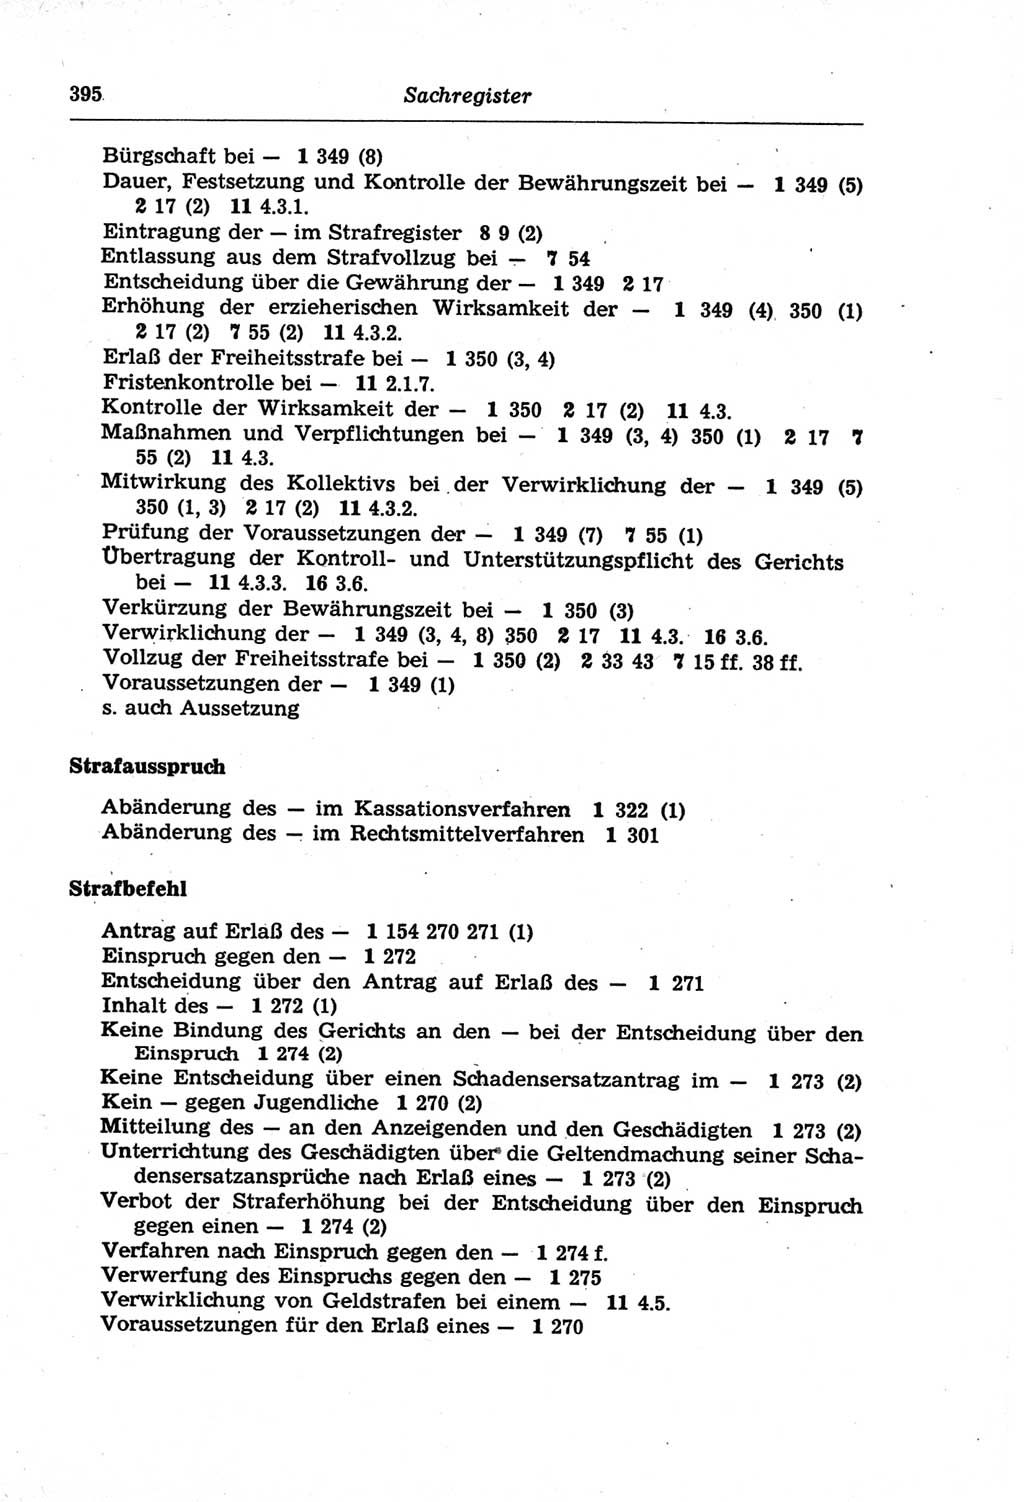 Strafprozeßordnung (StPO) der Deutschen Demokratischen Republik (DDR) und angrenzende Gesetze und Bestimmungen 1968, Seite 395 (StPO Ges. Bstgn. DDR 1968, S. 395)